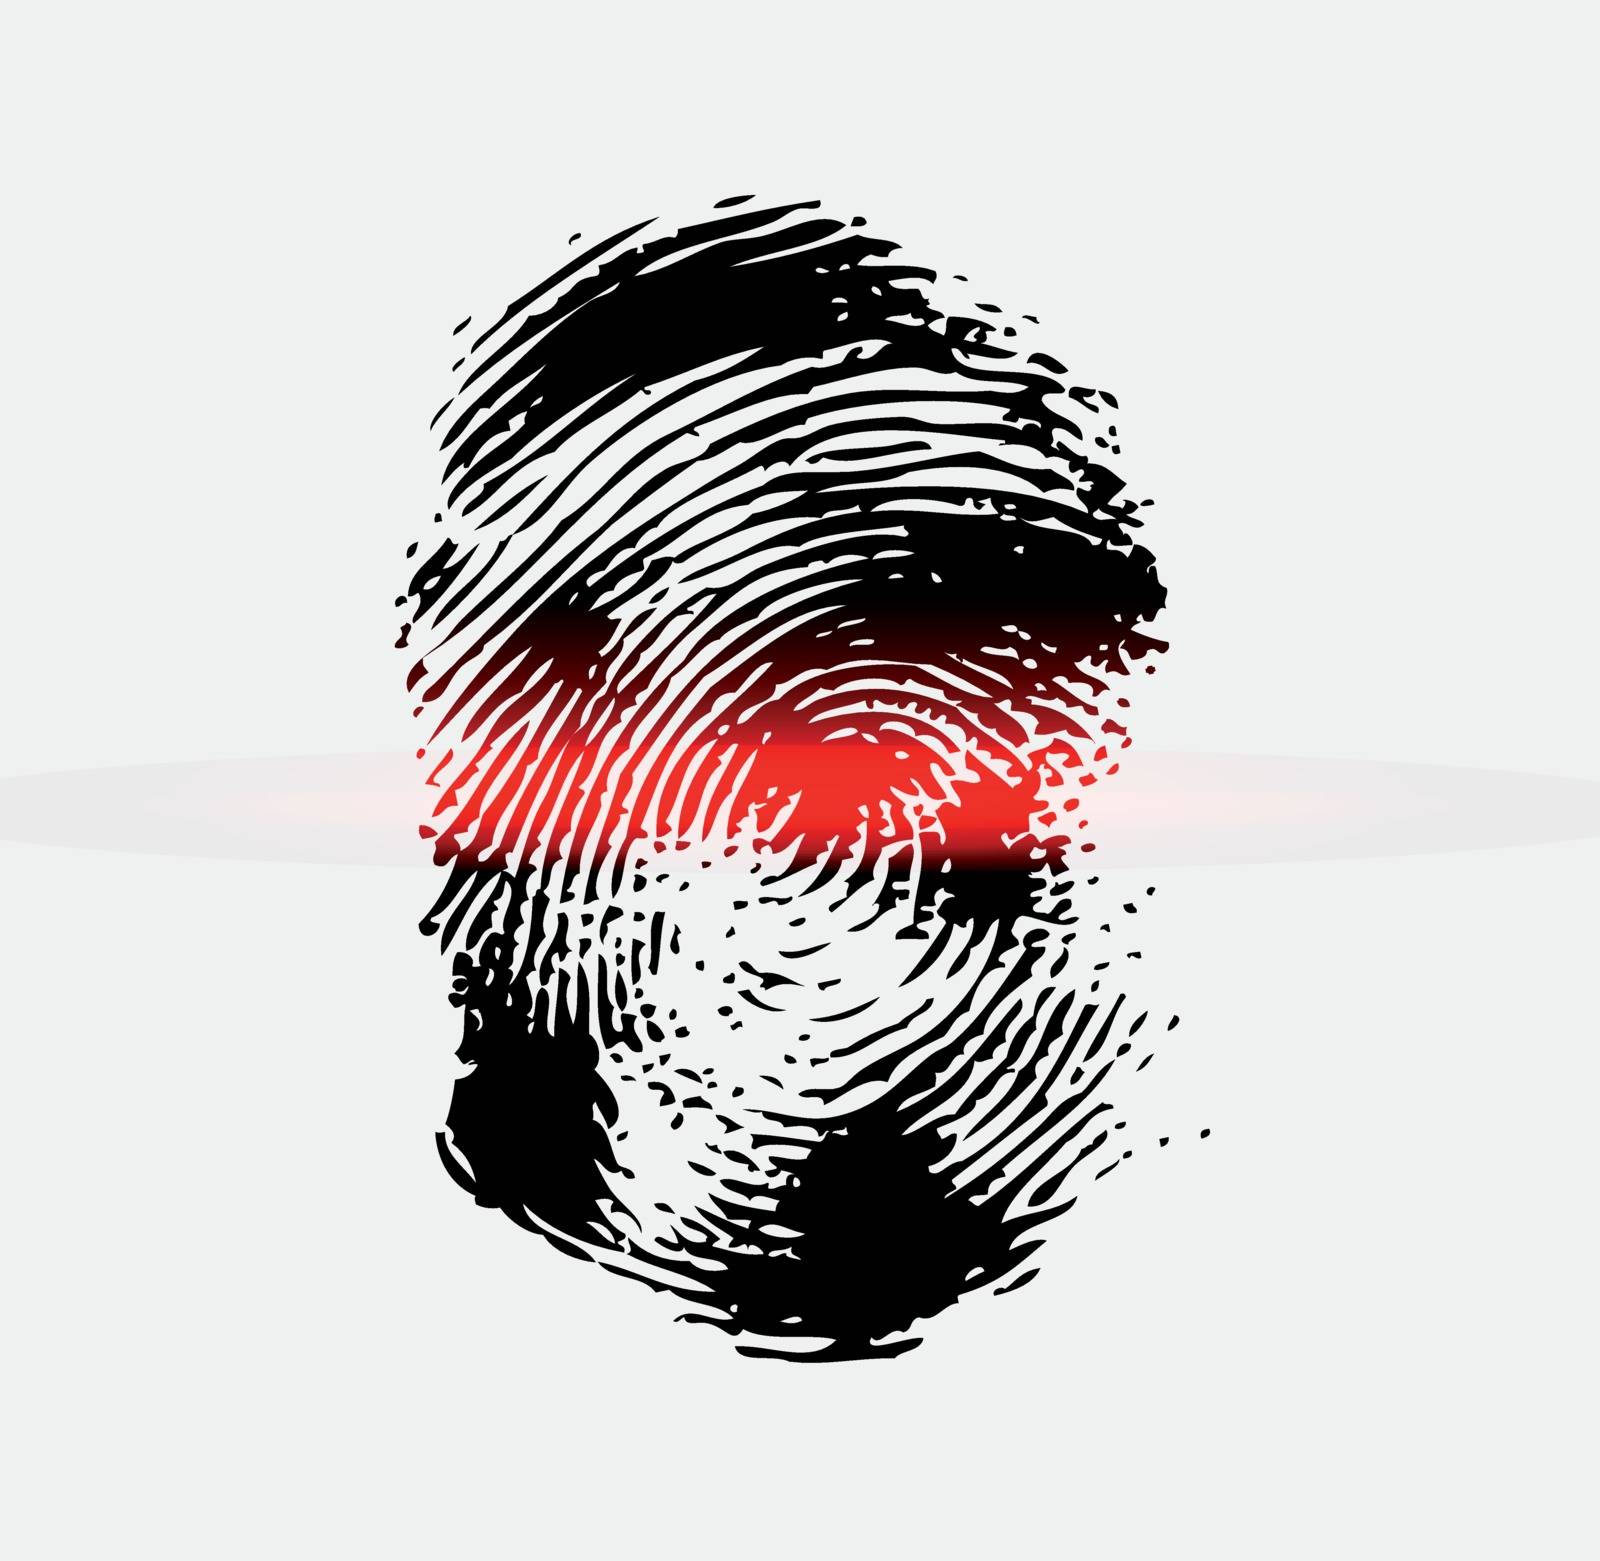 Ray scanner scan fingerprint. Vector illustration close-up